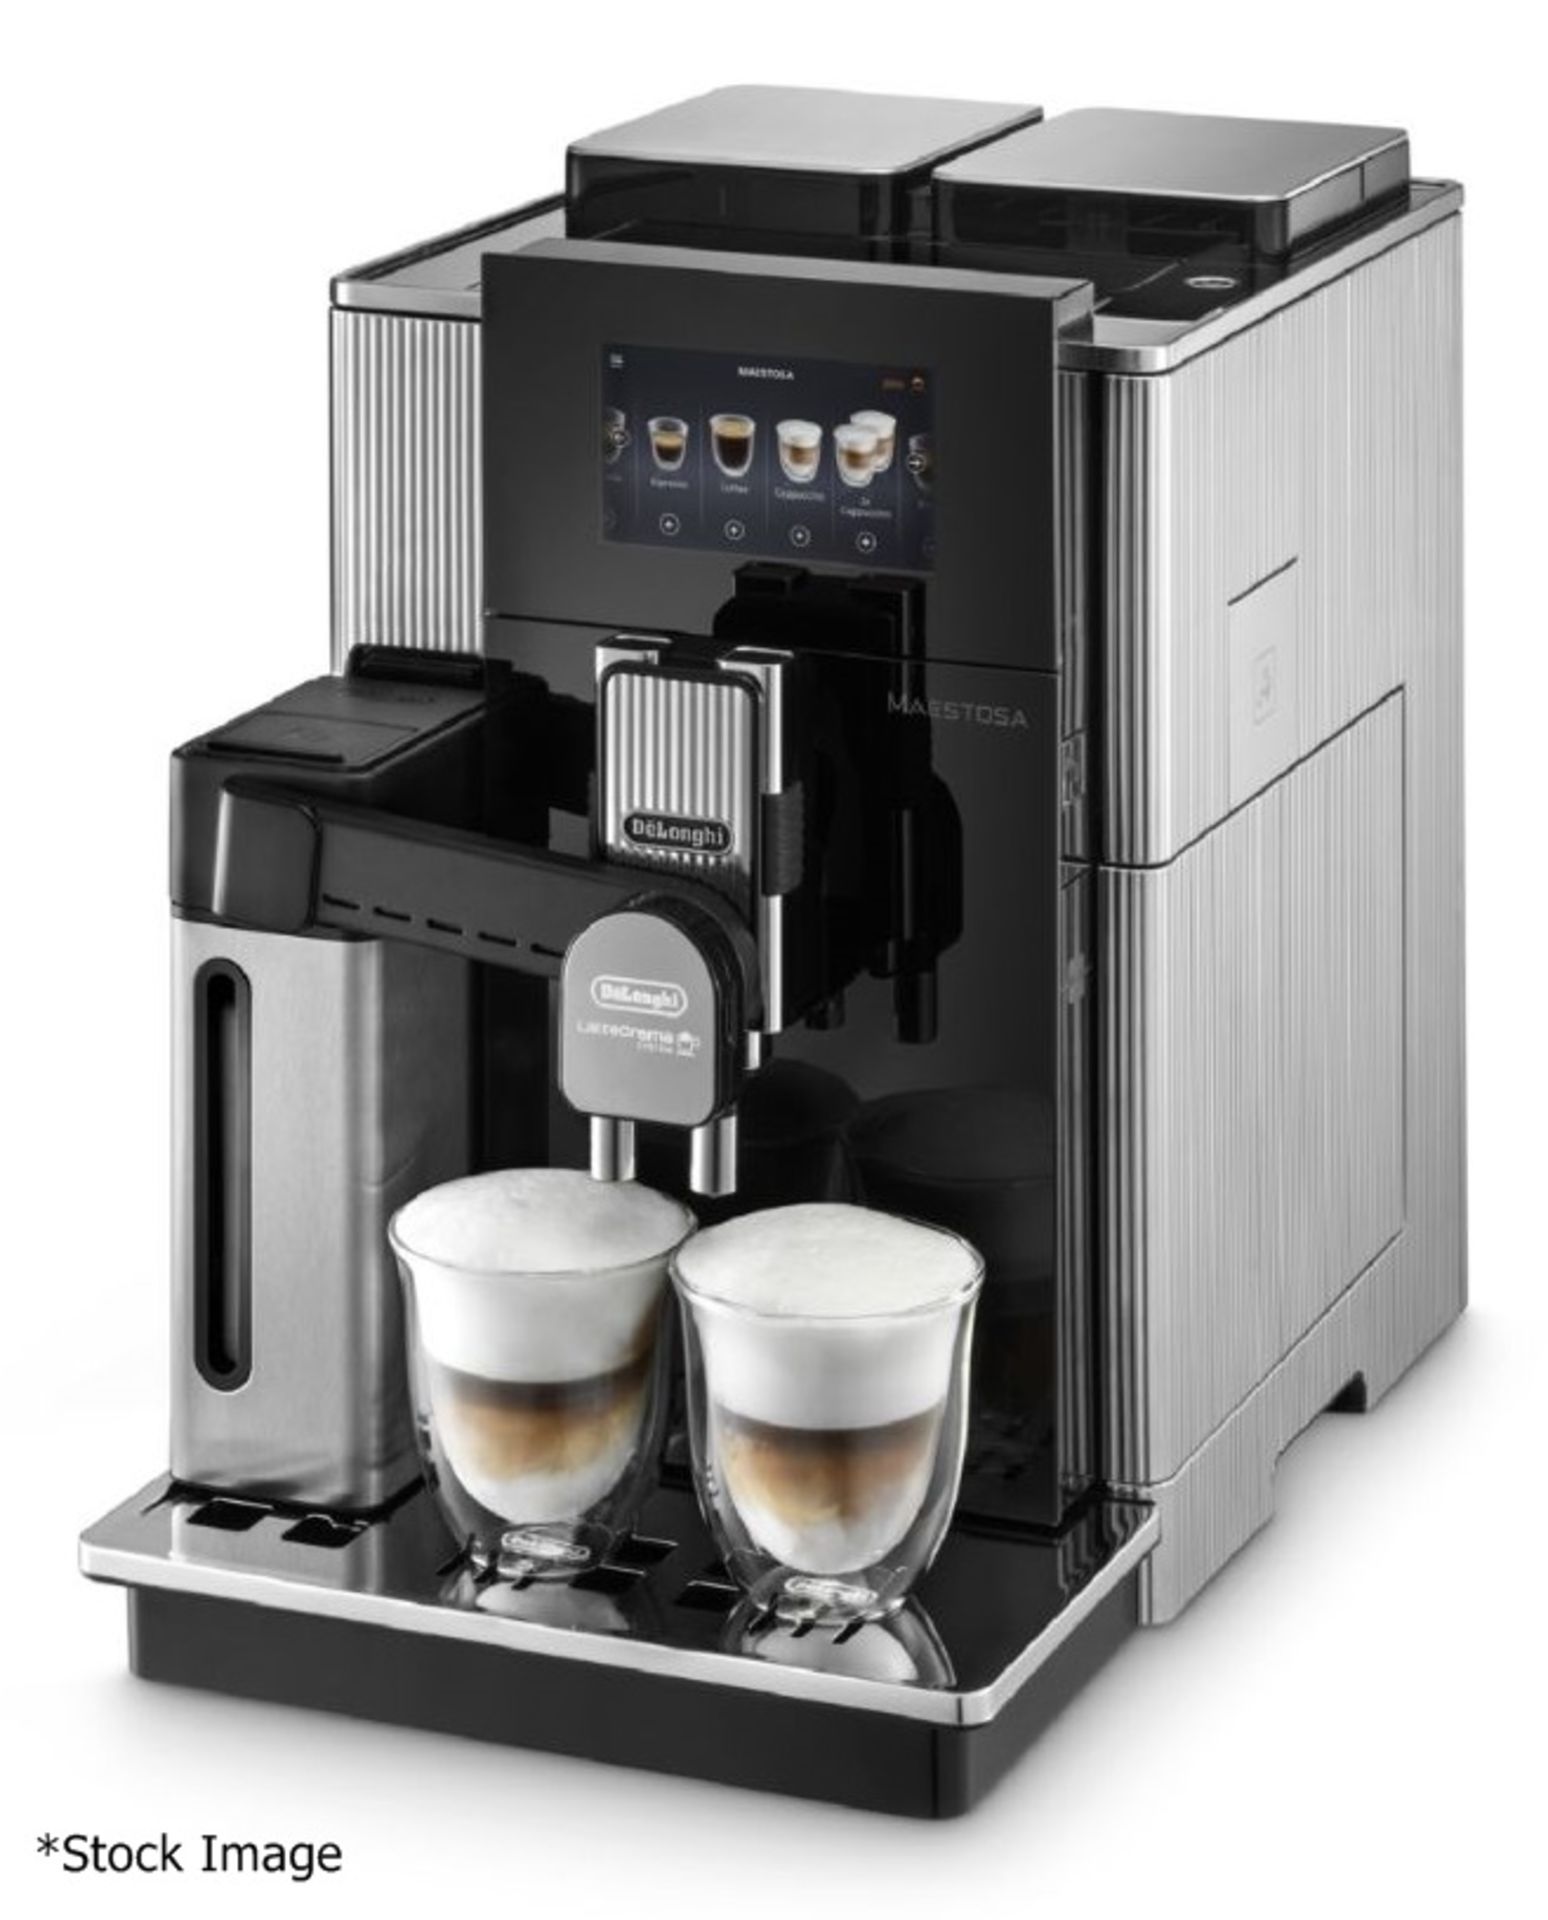 1 x DE'LONGHI 'Maestosa' Premium Bean-To-Cup Coffee Machine - Original Price £2,699 - Unused Boxed